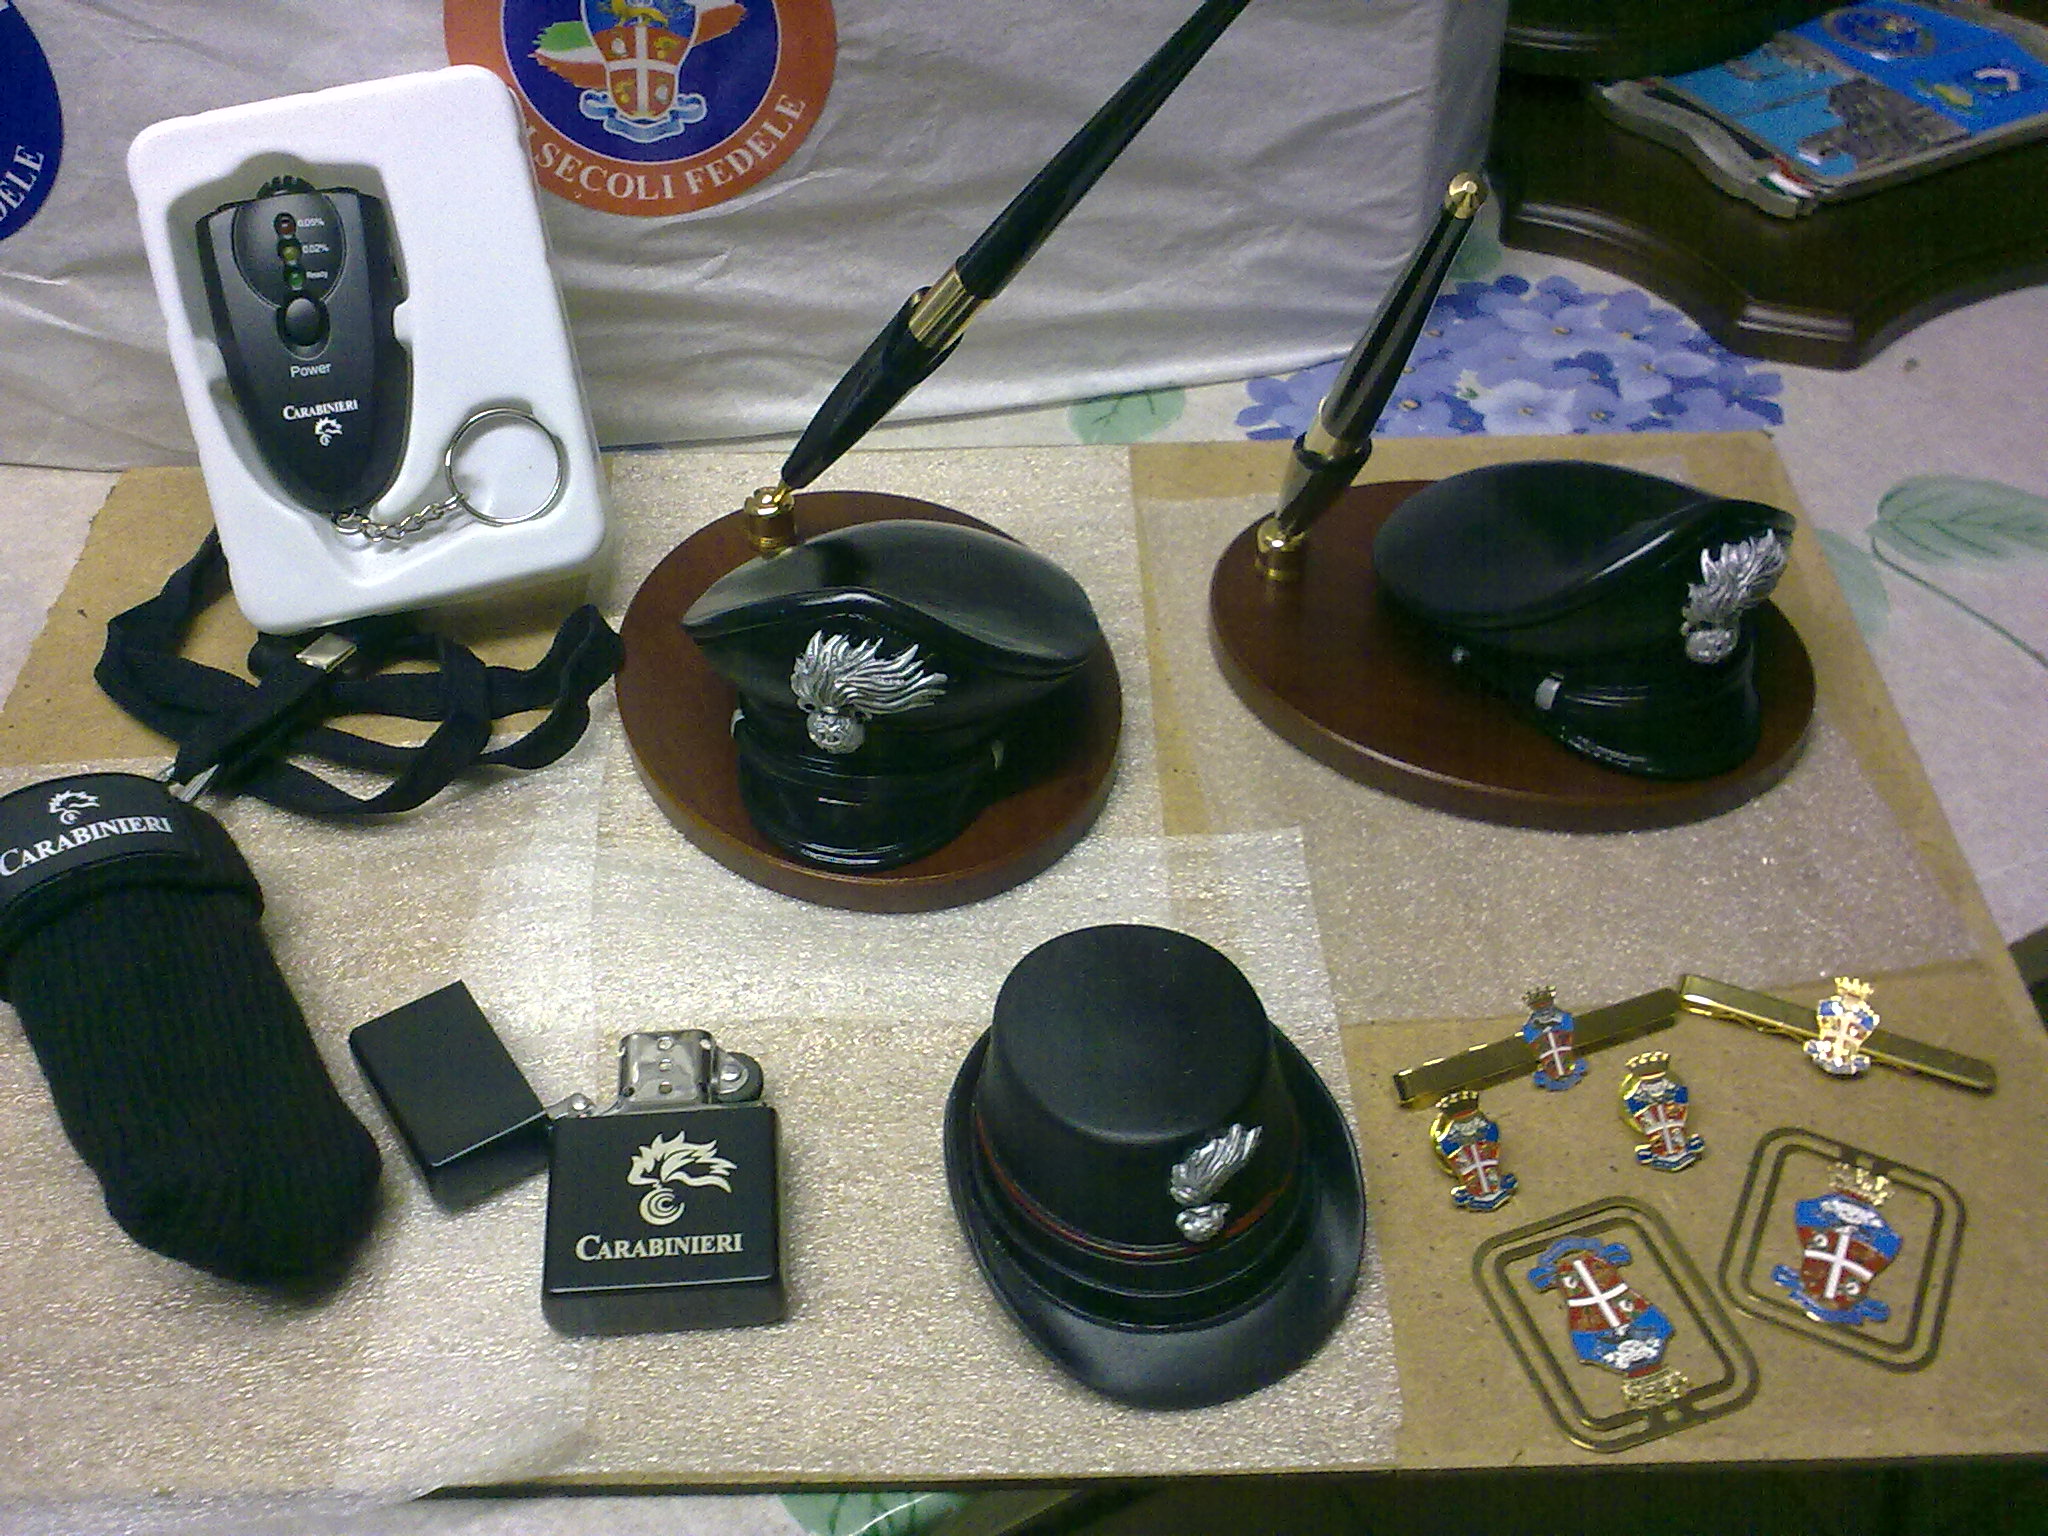 Oggetti regalo carabinieri oggettistica militare for Sito regalo oggetti